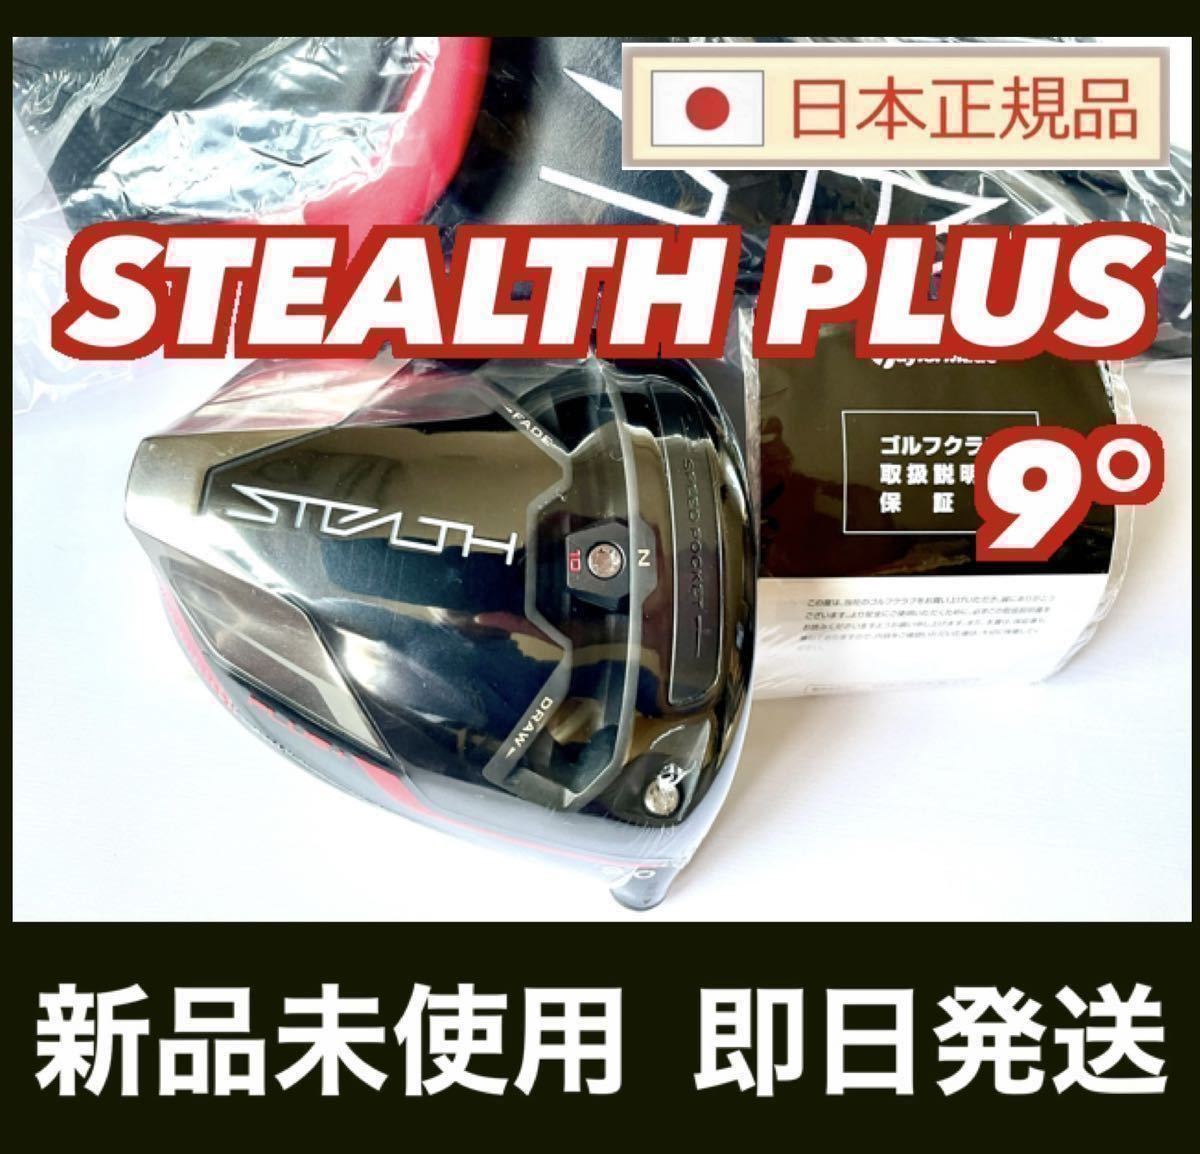 新品 ステルス プラス ドライバー 9 0° ヘッド STEALTH PLUS + 付属品